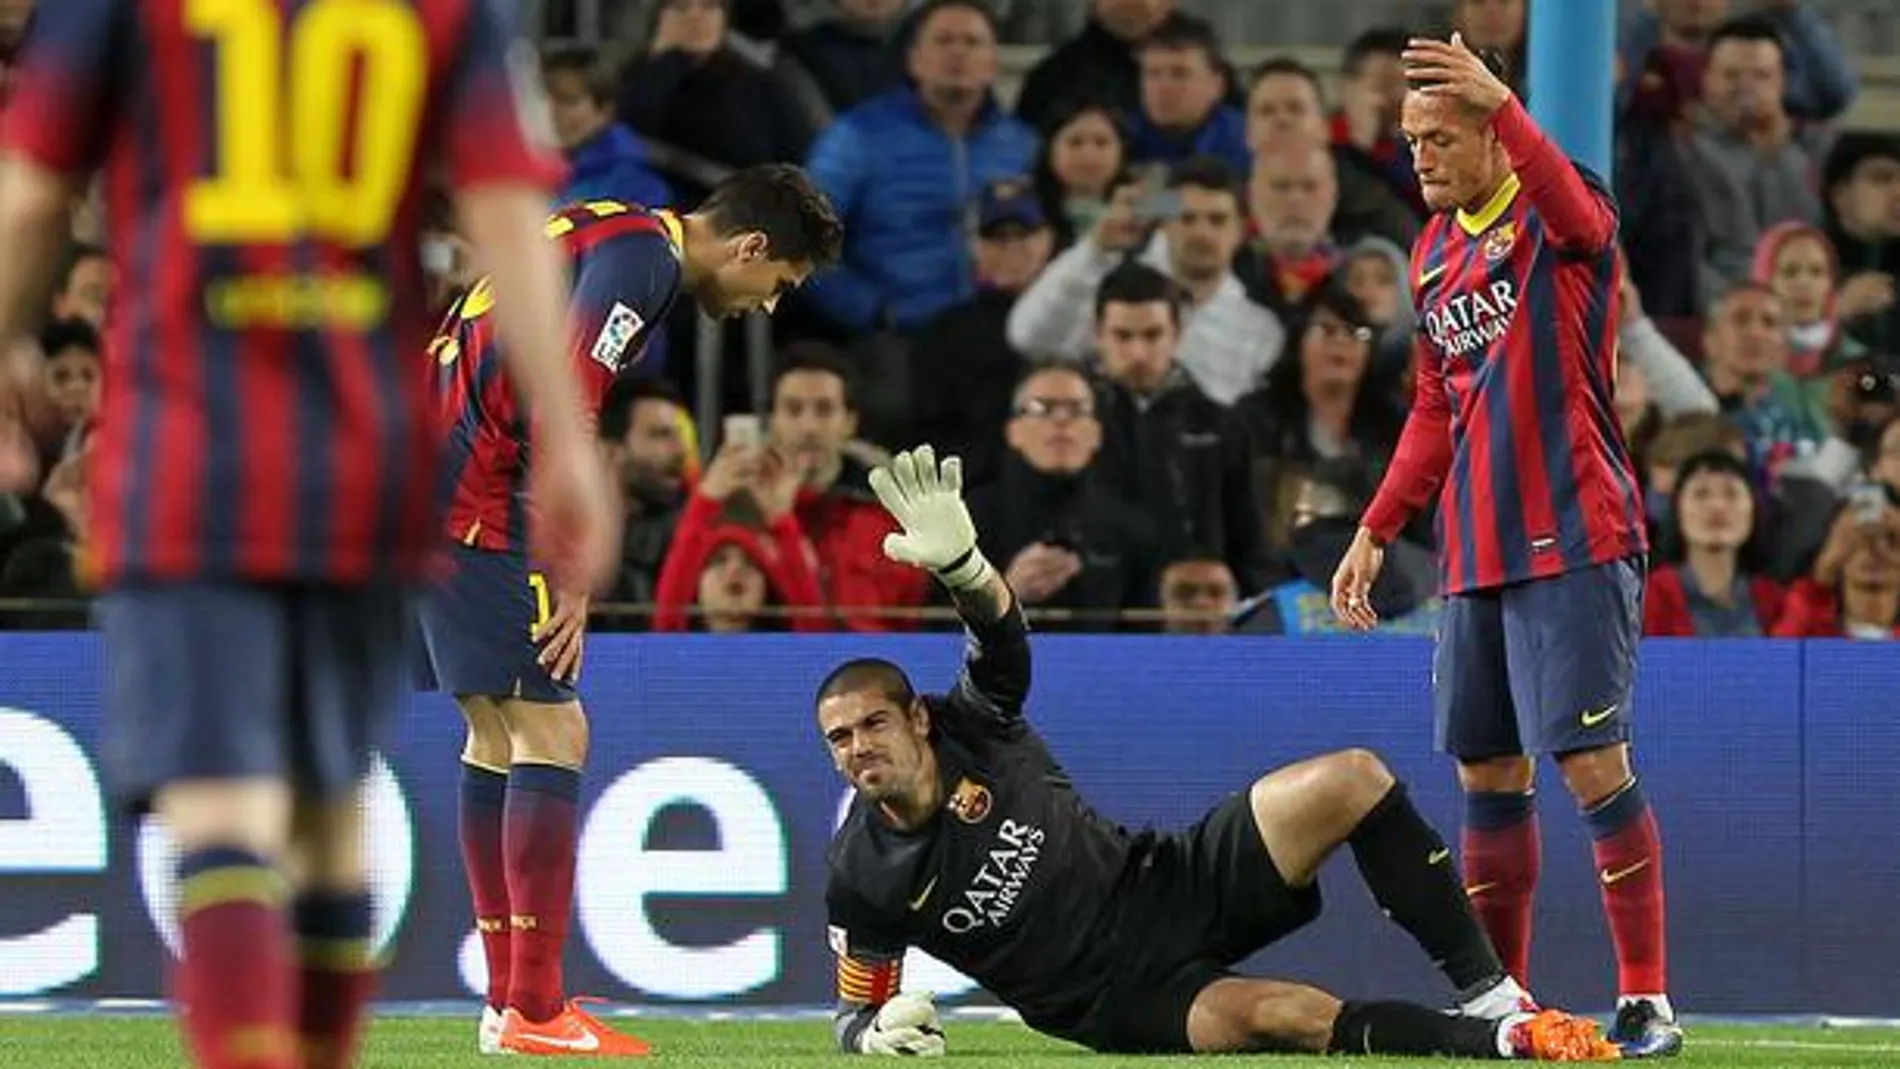 La semana pasada Víctor Valdés se rompió el ligamento cruzado anterior de la rodilla derecha